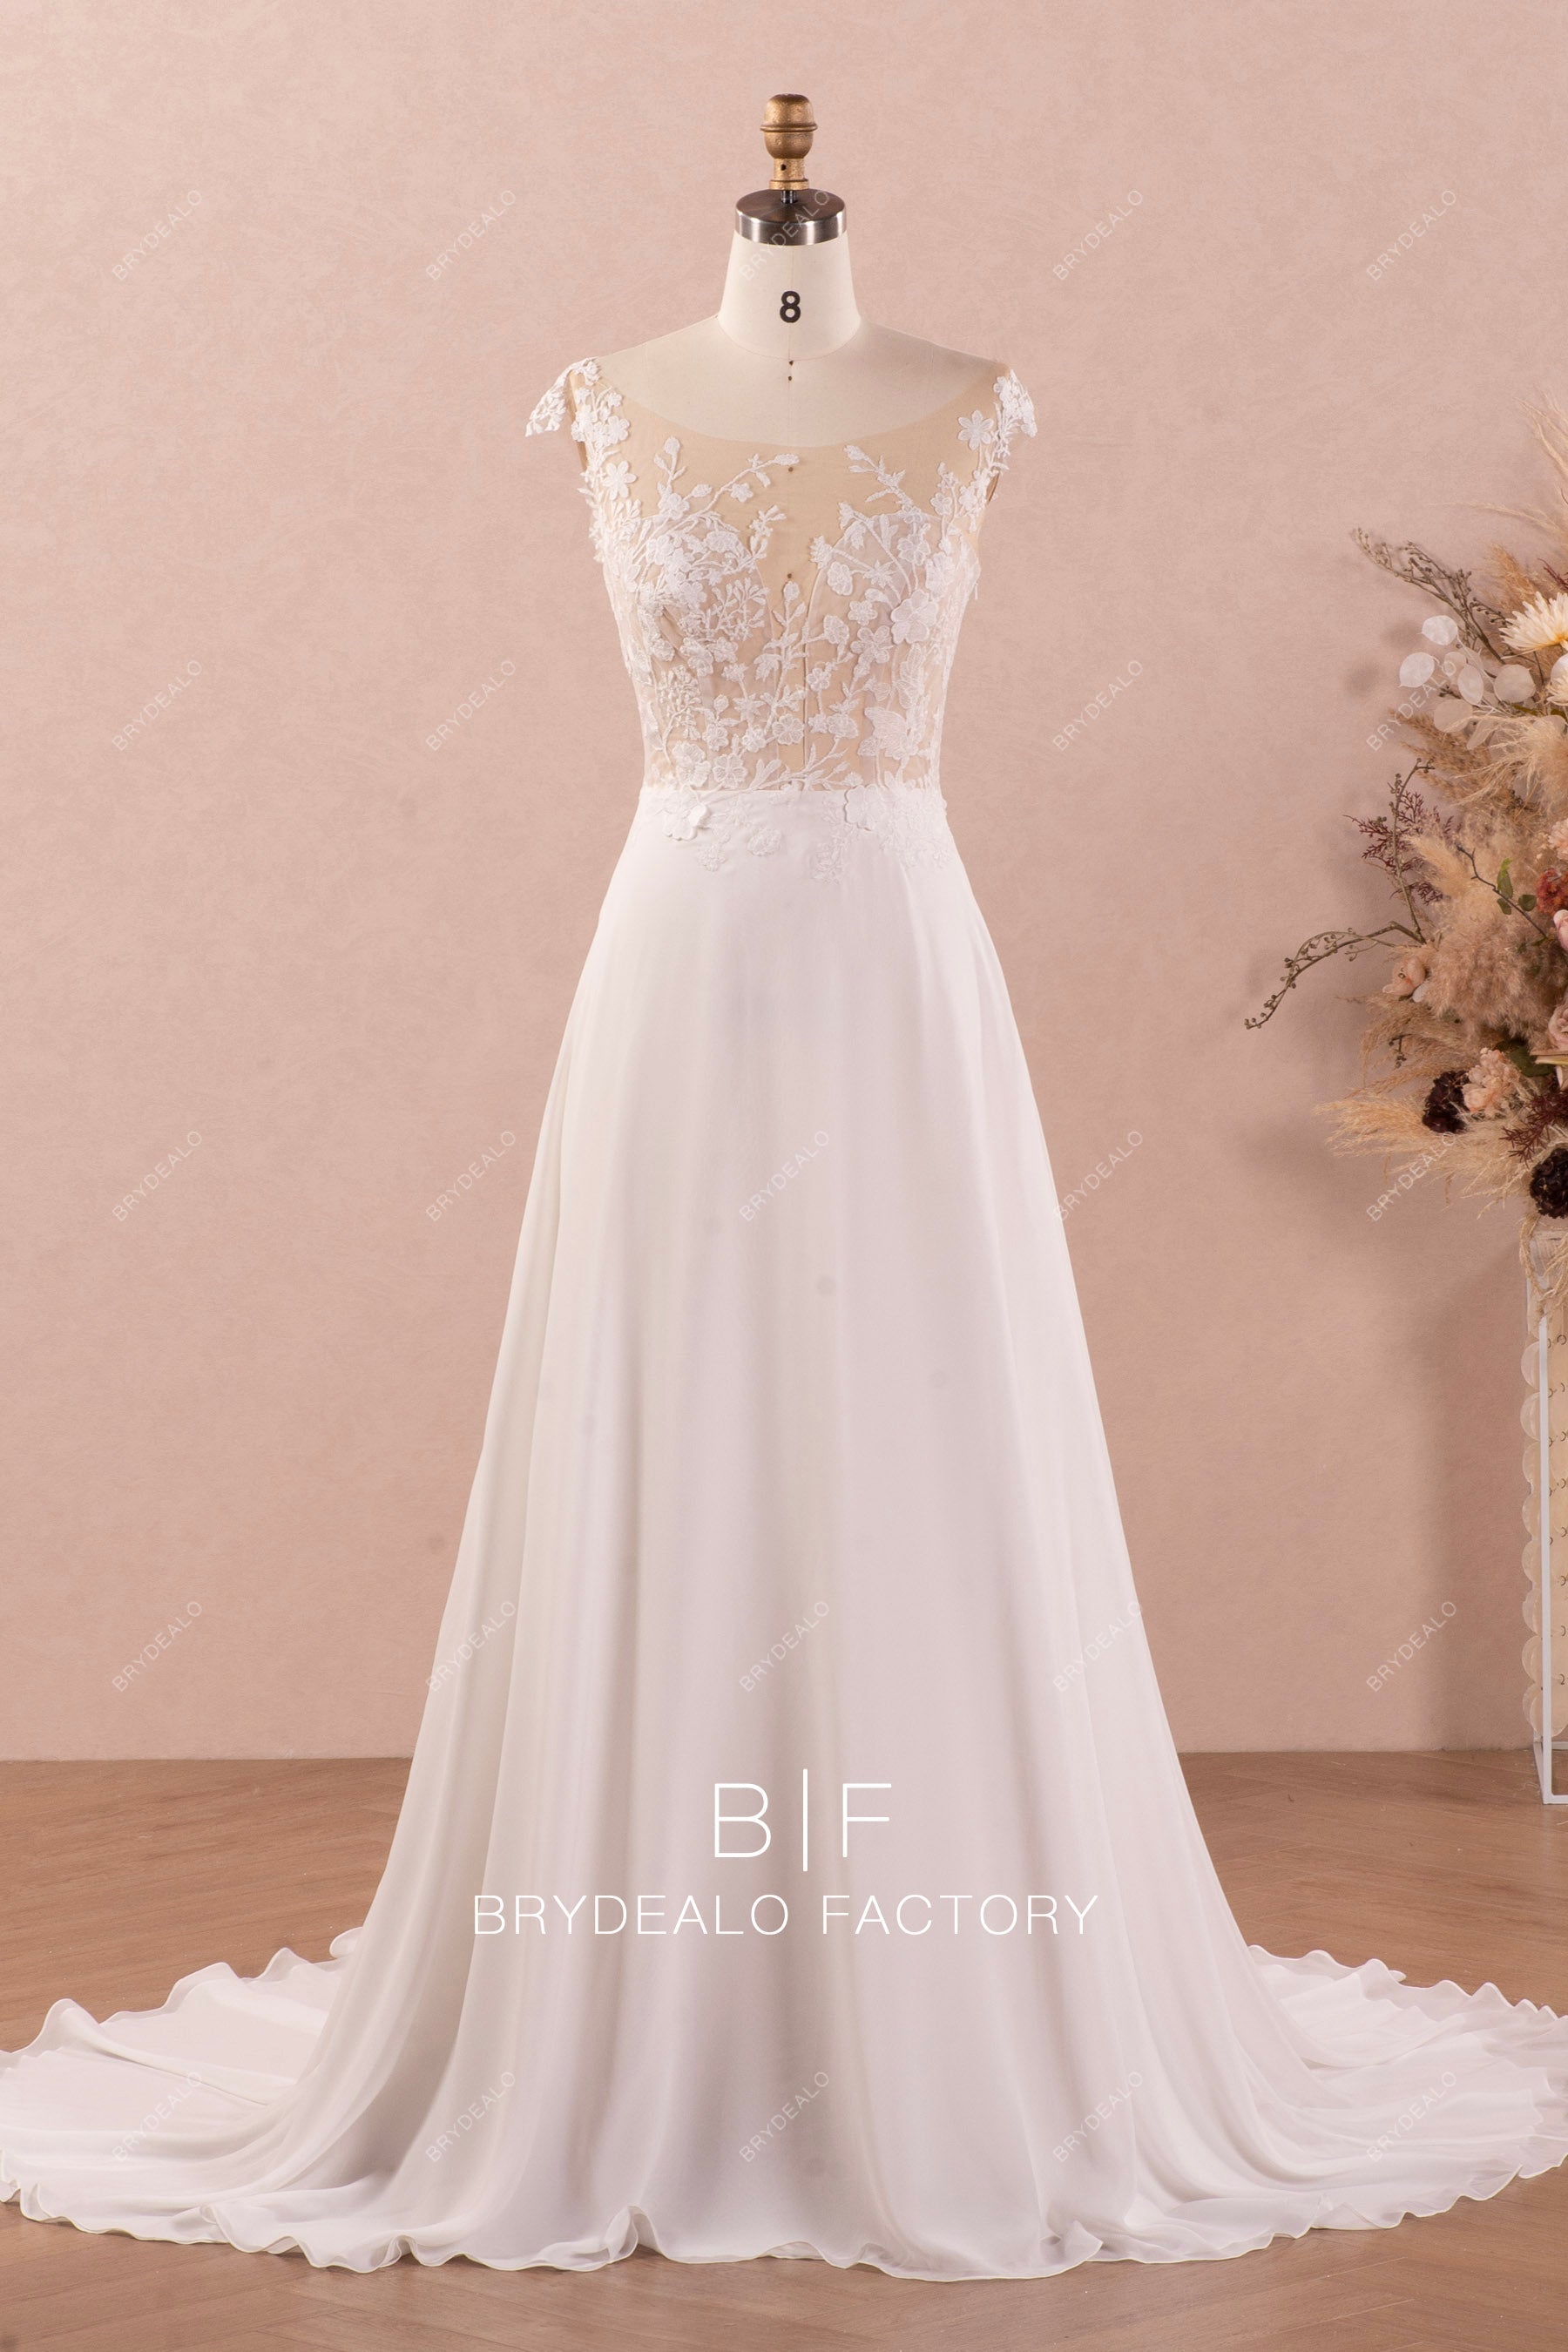 botanic lace A-line chiffon summer beach wedding dress